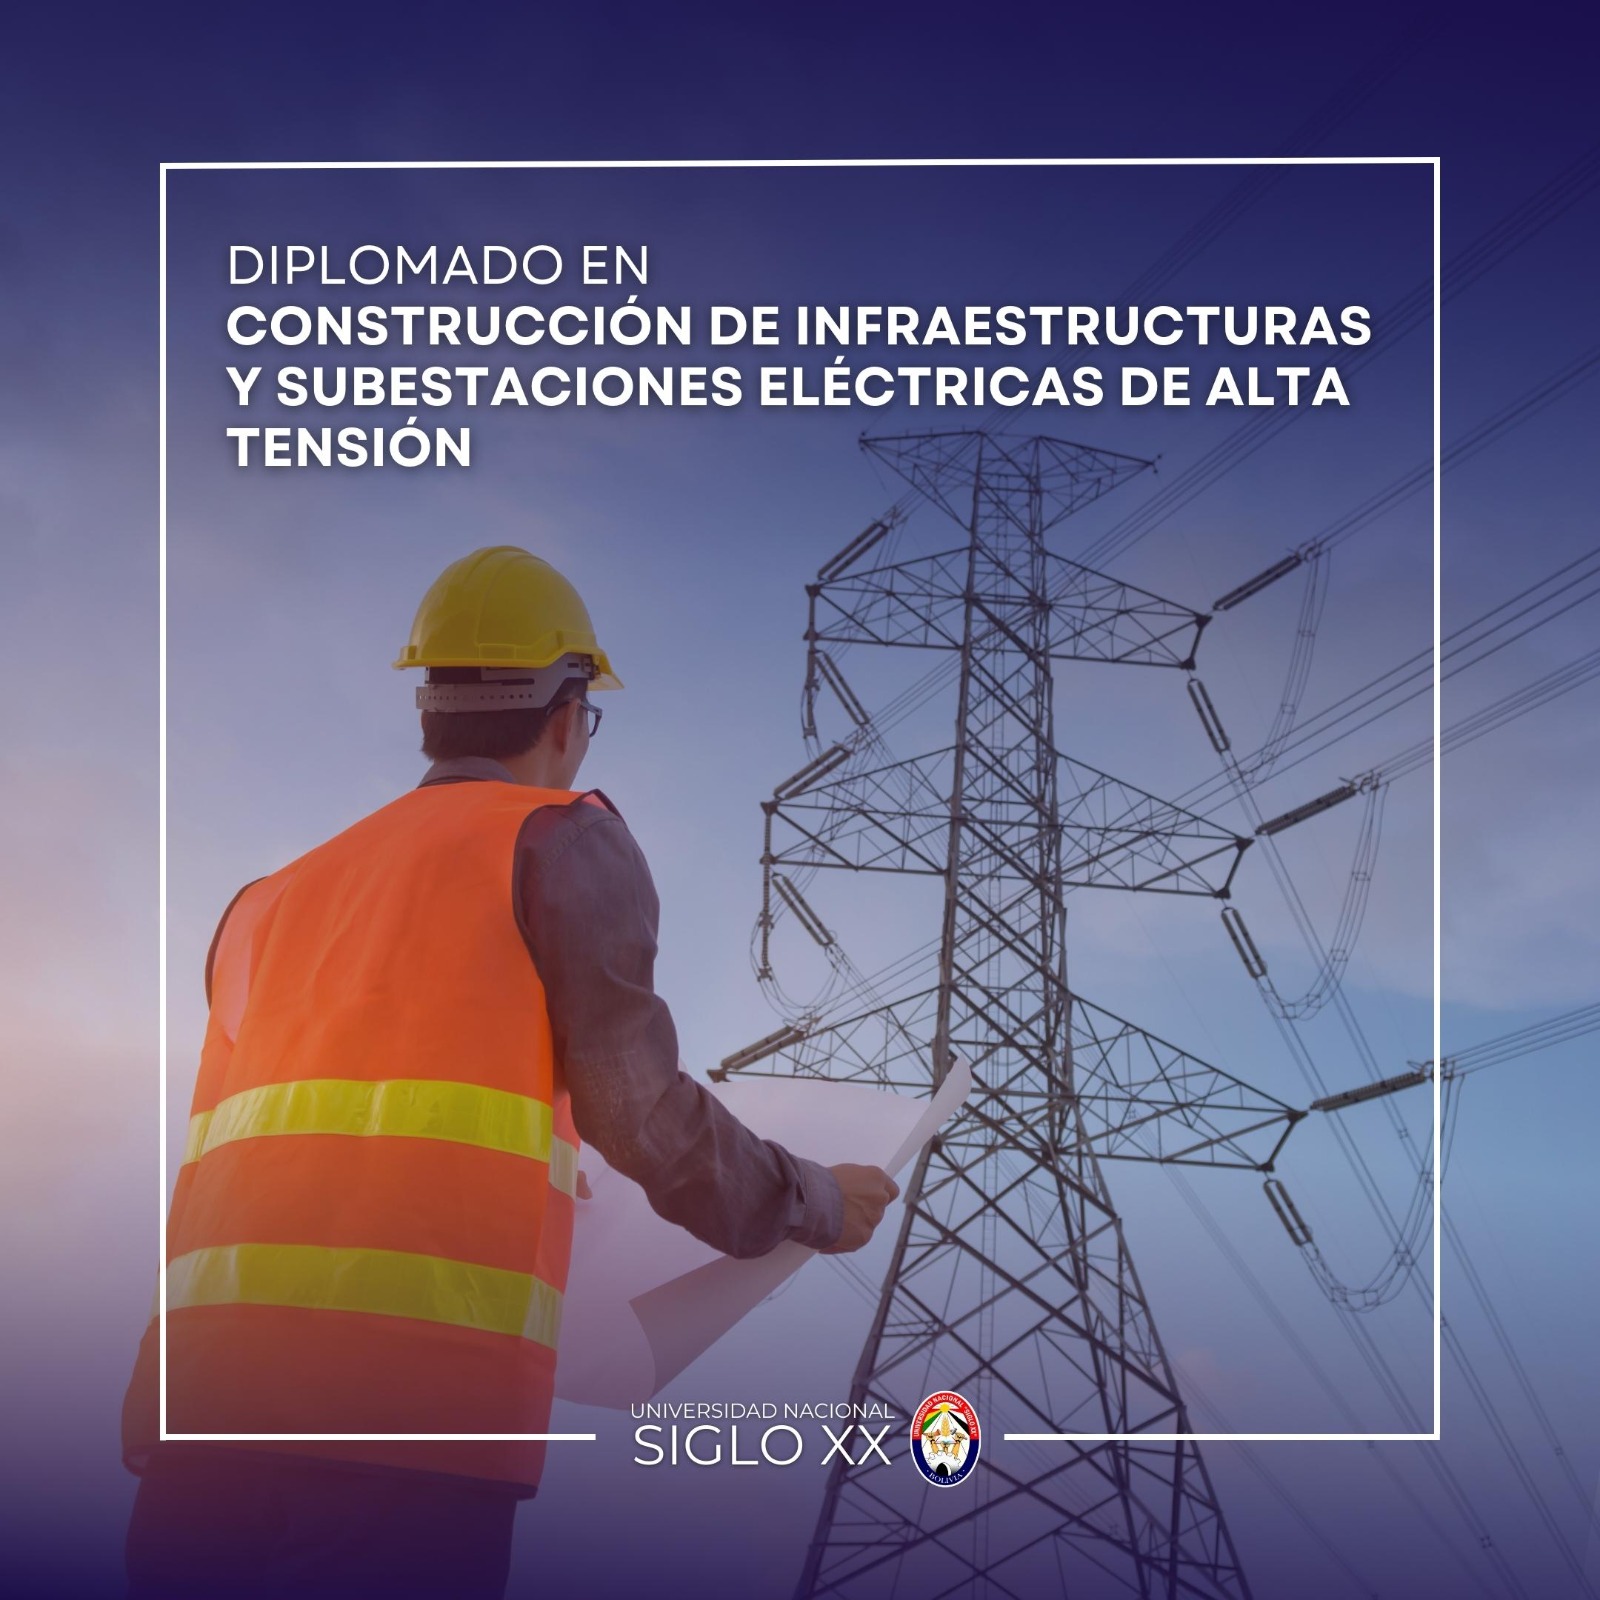 Diplomado DIPLOMADO EN CONSTRUCCIÓN DE INFRAESTRUCTURAS Y SUBESTACIONES ELÉCTRICAS DE ALTA TENSIÓN